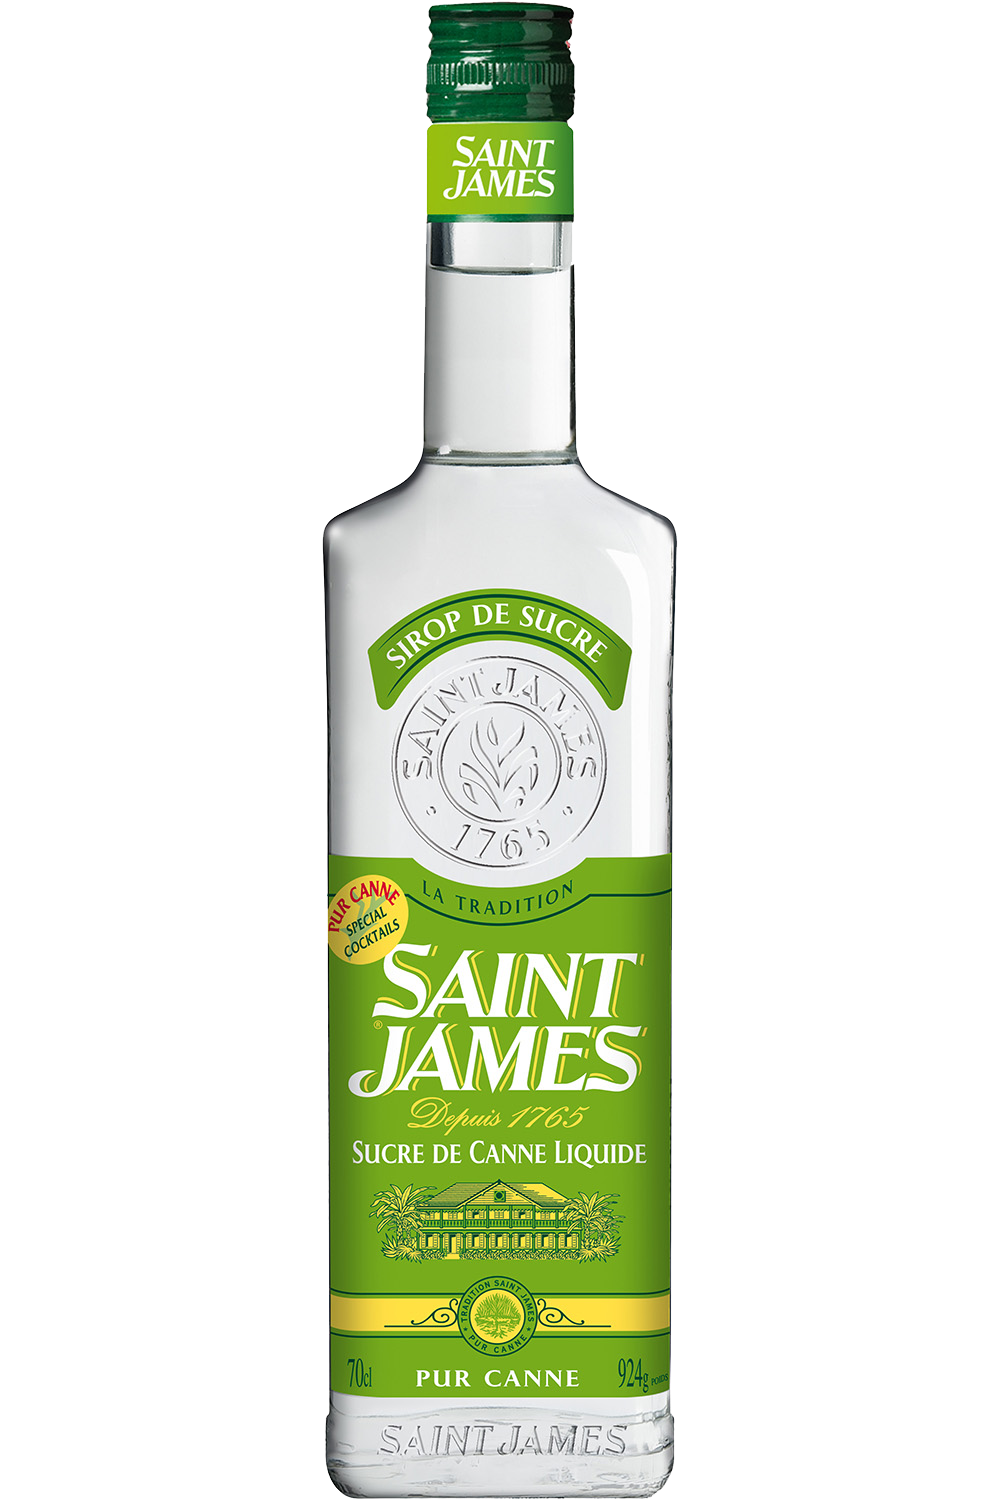 Saint James suikersiroop